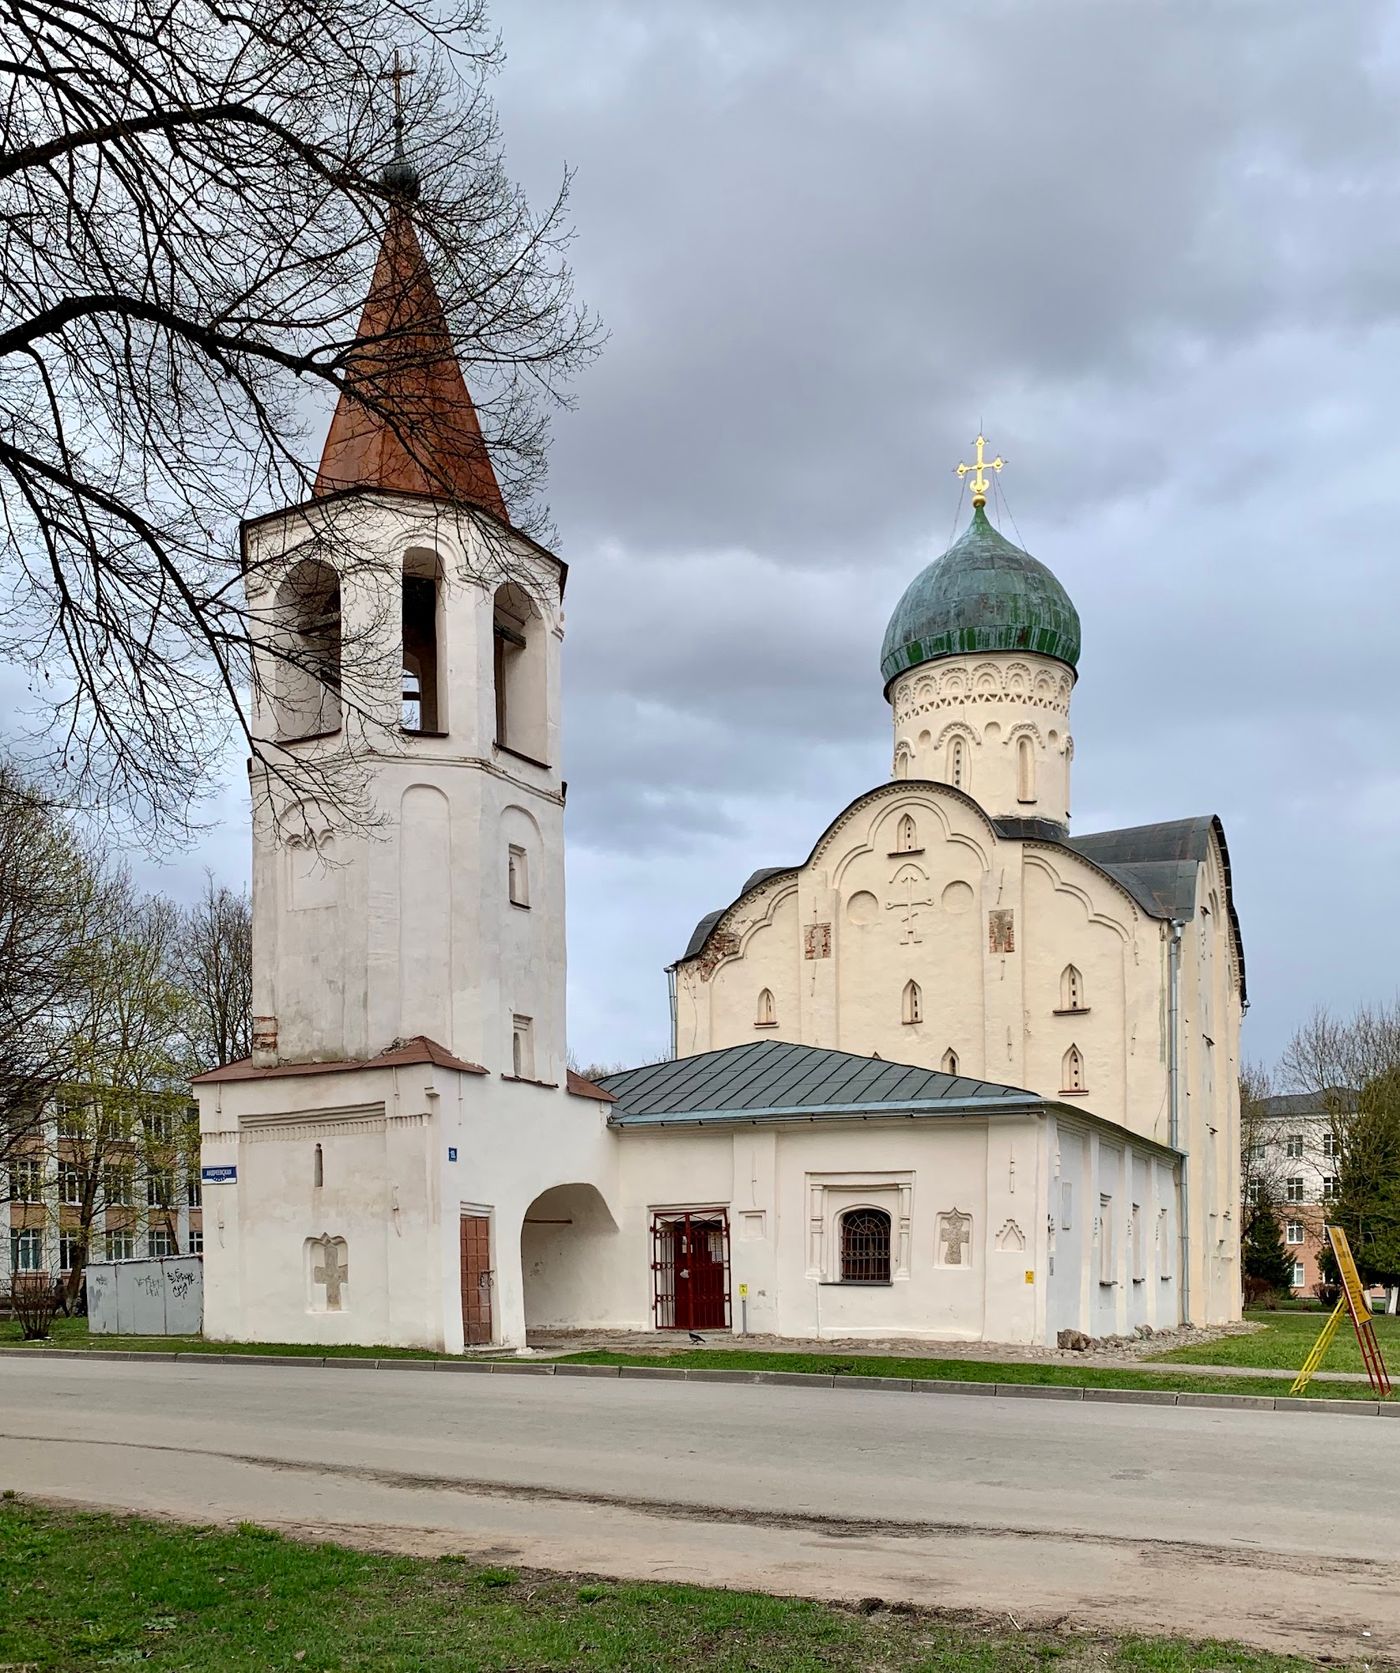 Mittelalterliche Kirche mit Geschichte